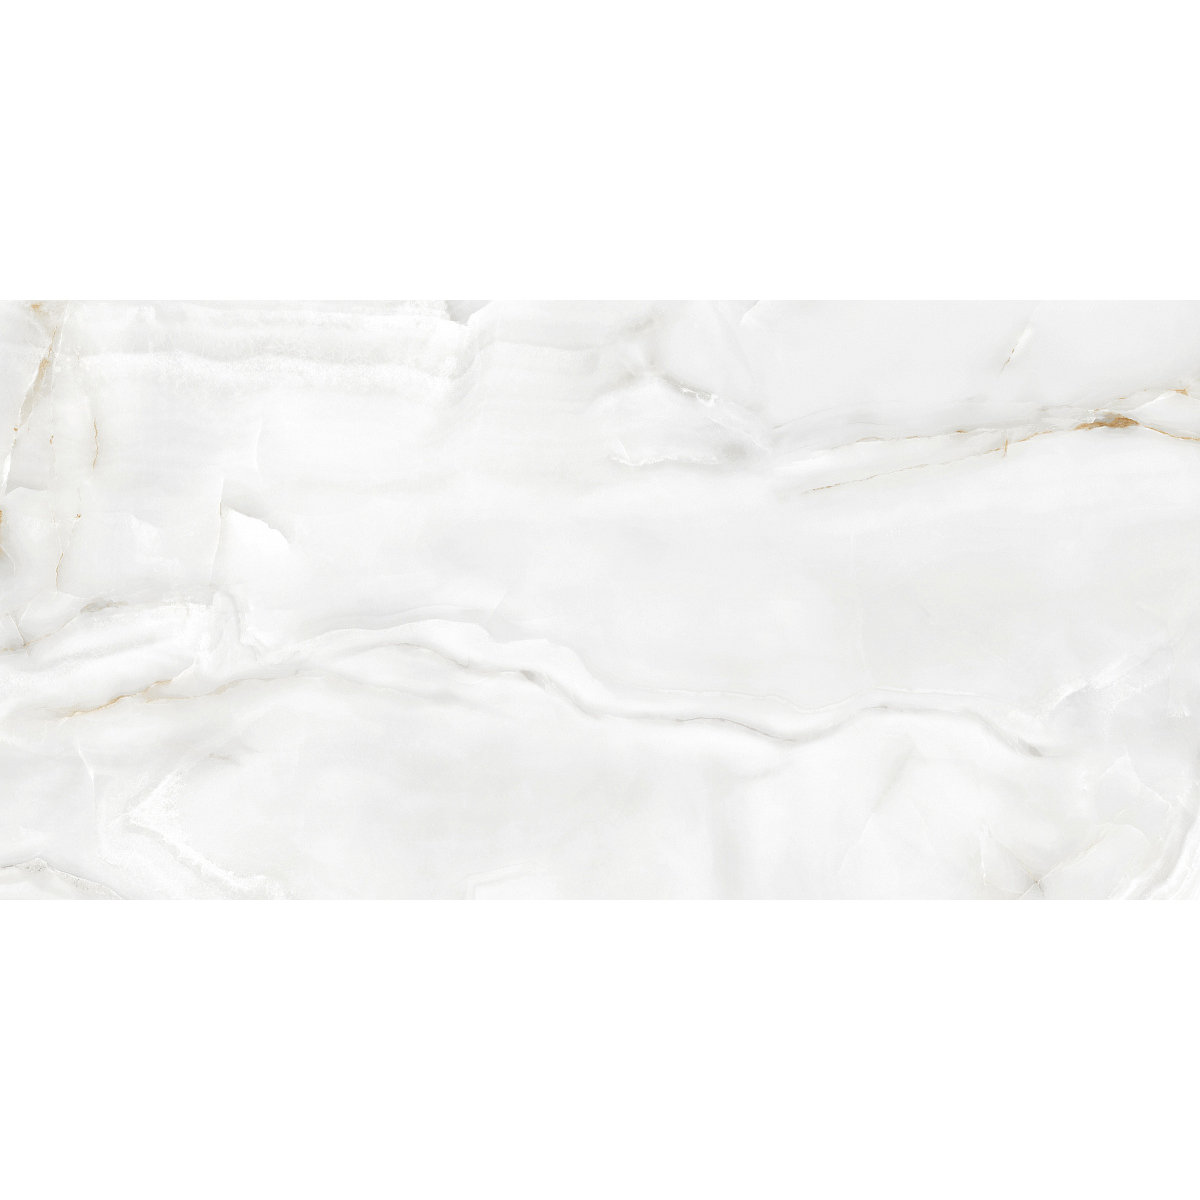 Плитка Ecoceramic Eternal White 017 Mt 60x120 см плитка ecoceramic eternal white 017 mt 60x60 см